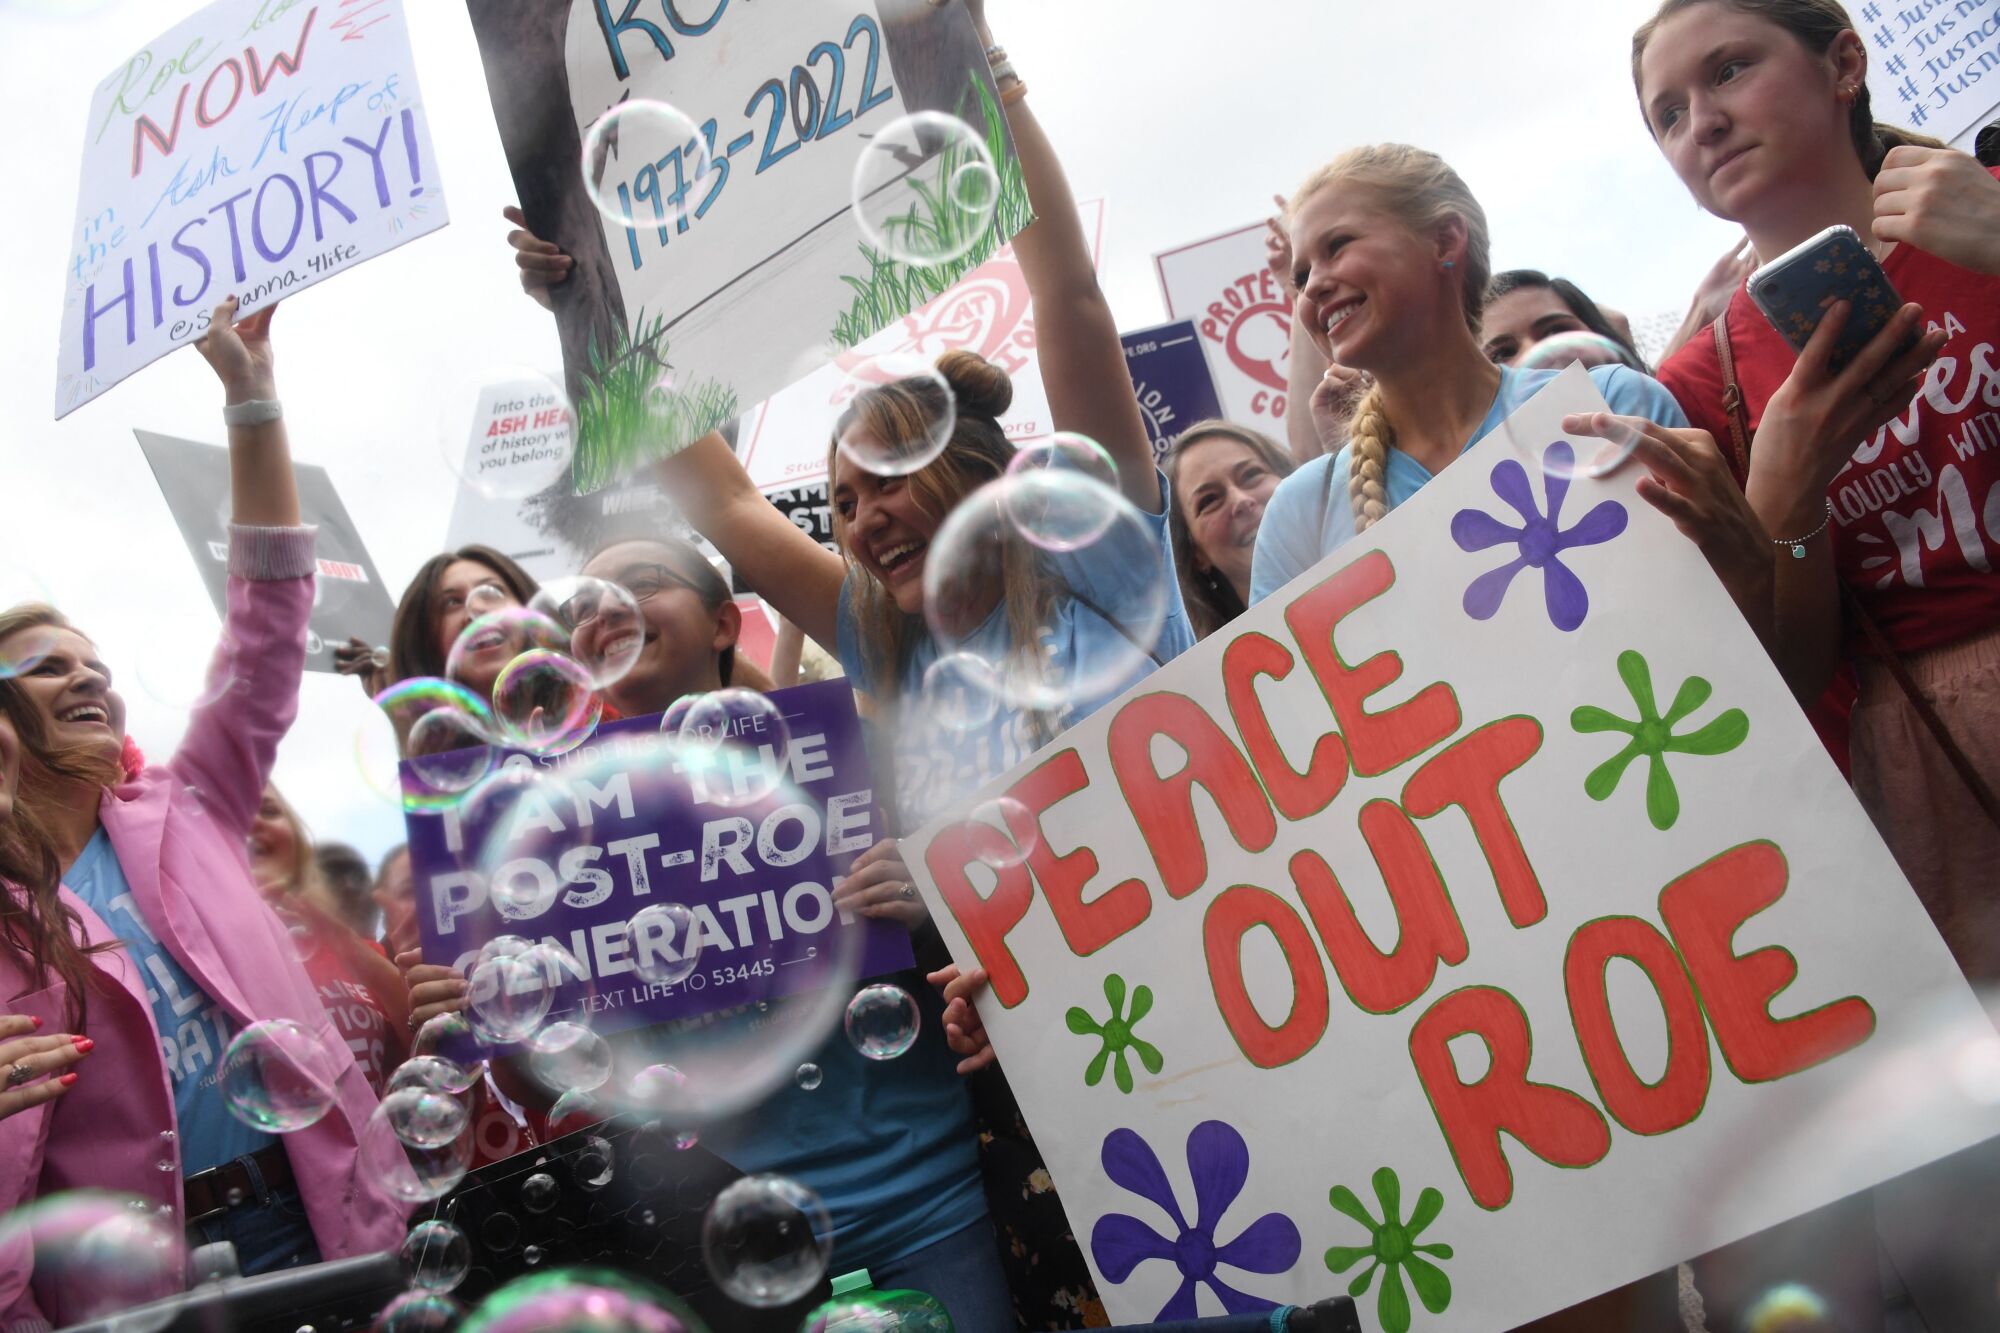 Kürtaj karşıtı eylemciler Washington DC'deki ABD Yüksek Mahkemesinin önünde kutlama yapıyor